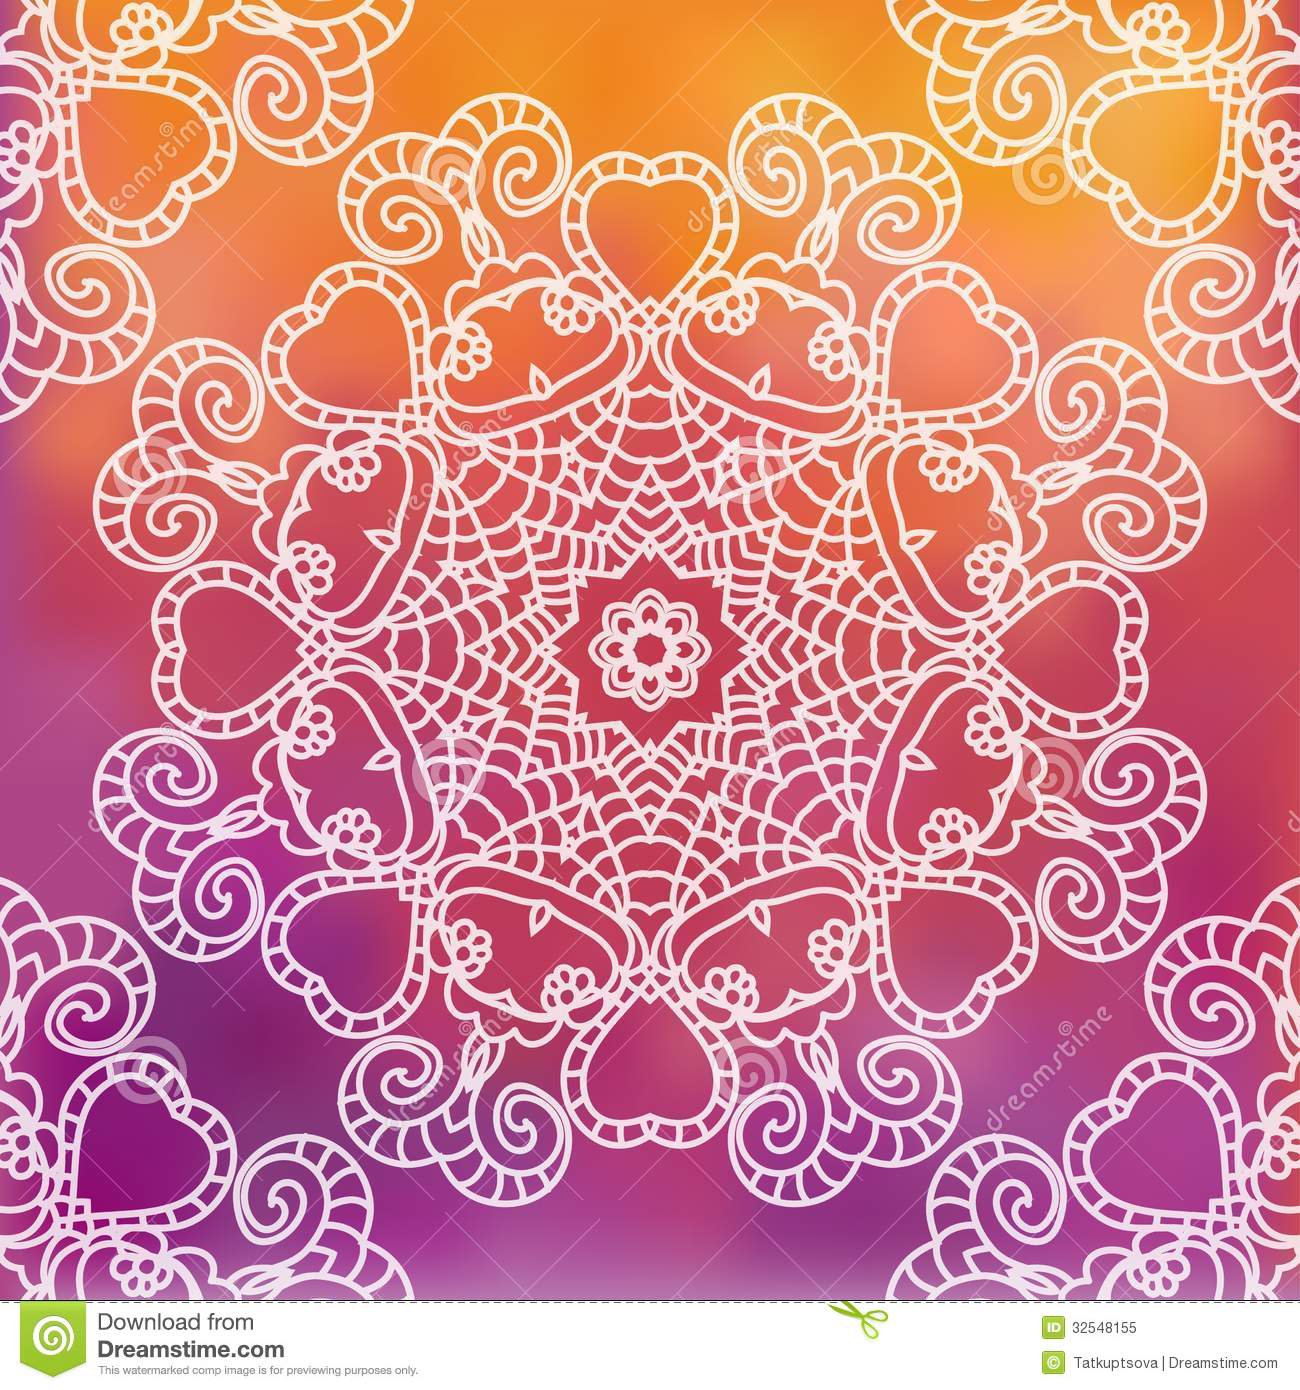 19gt Image For Indian Patterns Background Wedding Cards Design